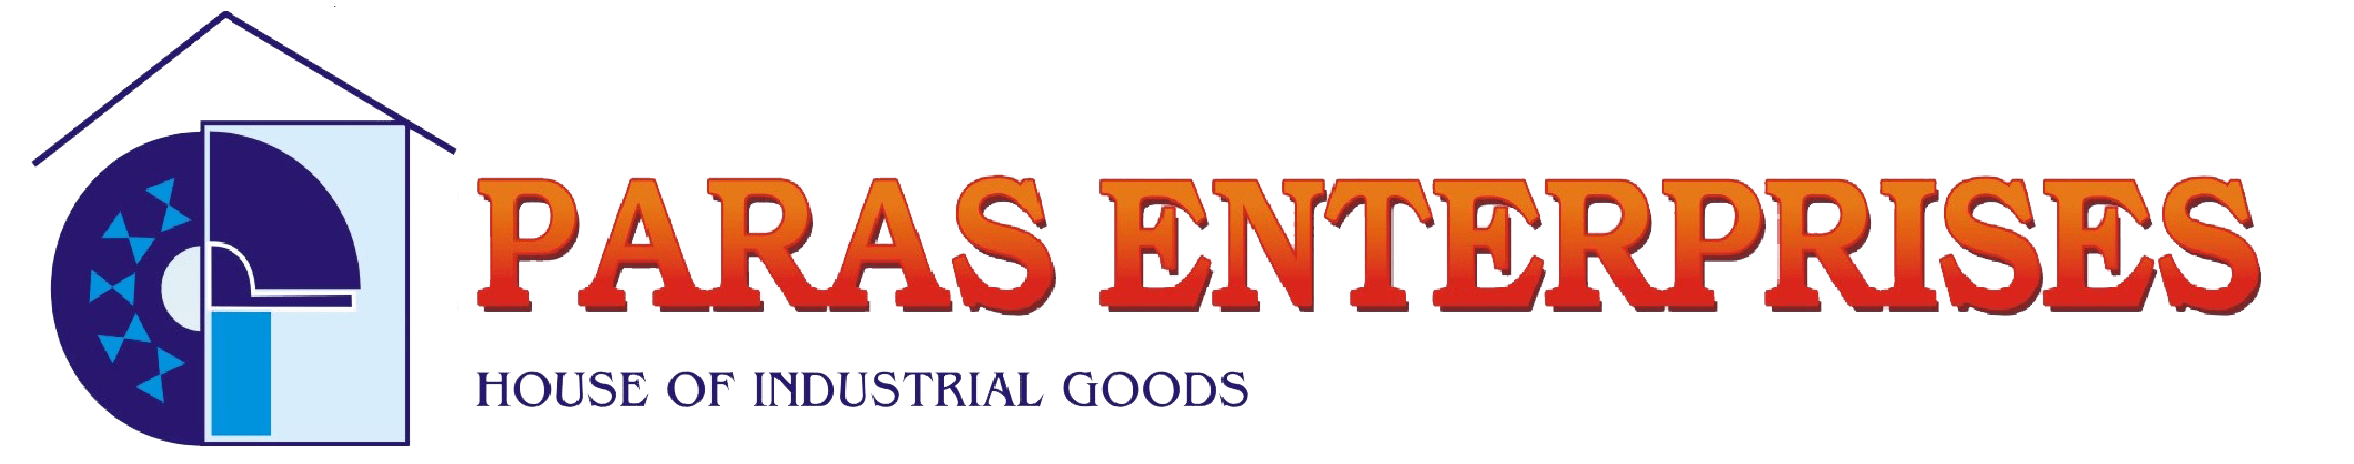 Pars Enterprises